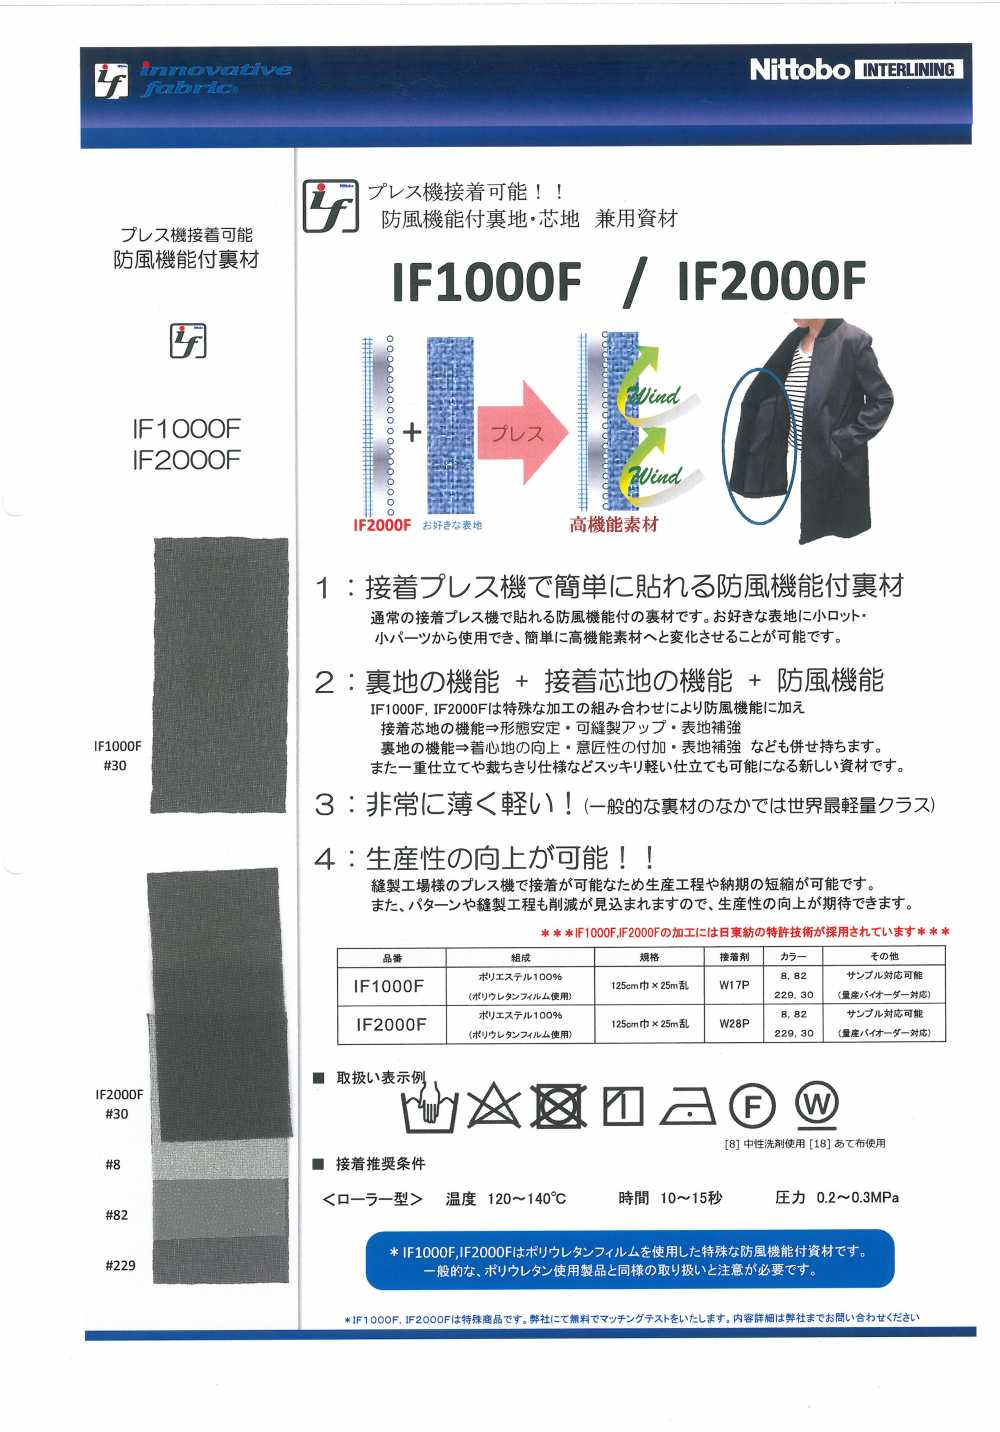 IF1000F Fodera / Materiale Interfodera Con Funzione Antivento Nittobo